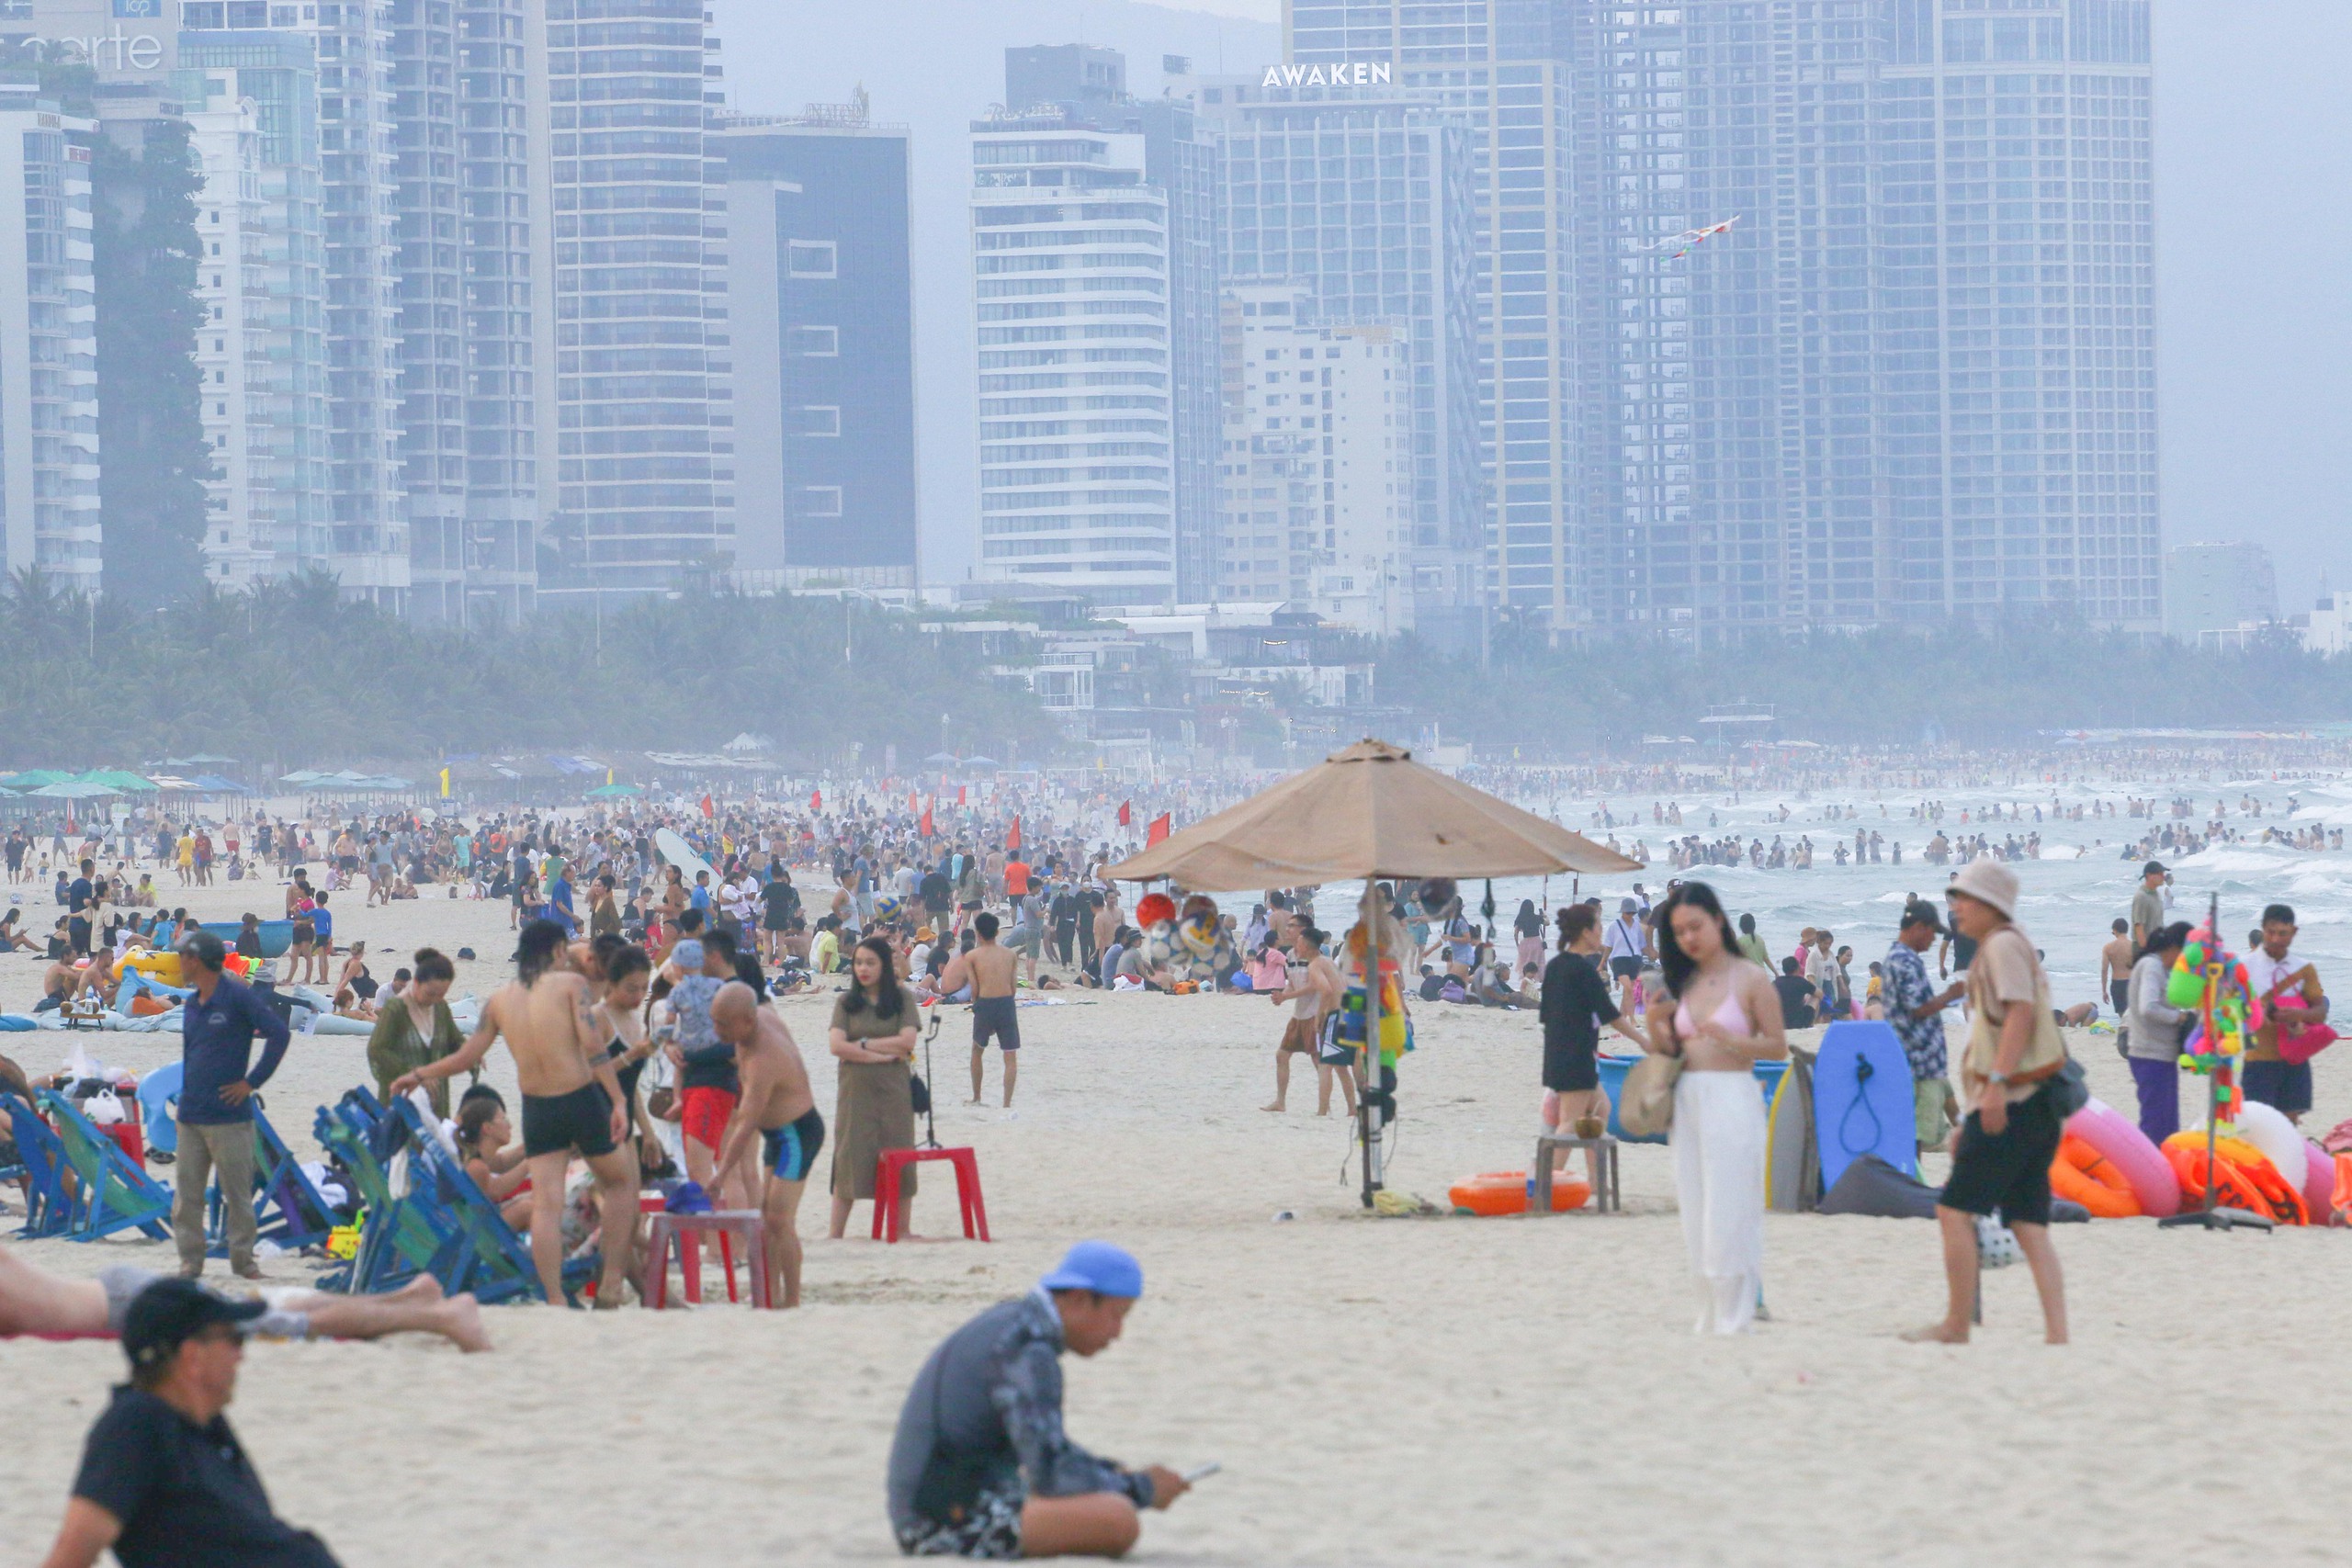 Thời tiết nắng nóng gay gắt, nền nhiệt ngoài trời từ 36 - 40 độ C, người dân và du khách đổ xô ra bãi biển để vui chơi, tắm biển... giải nhiệt